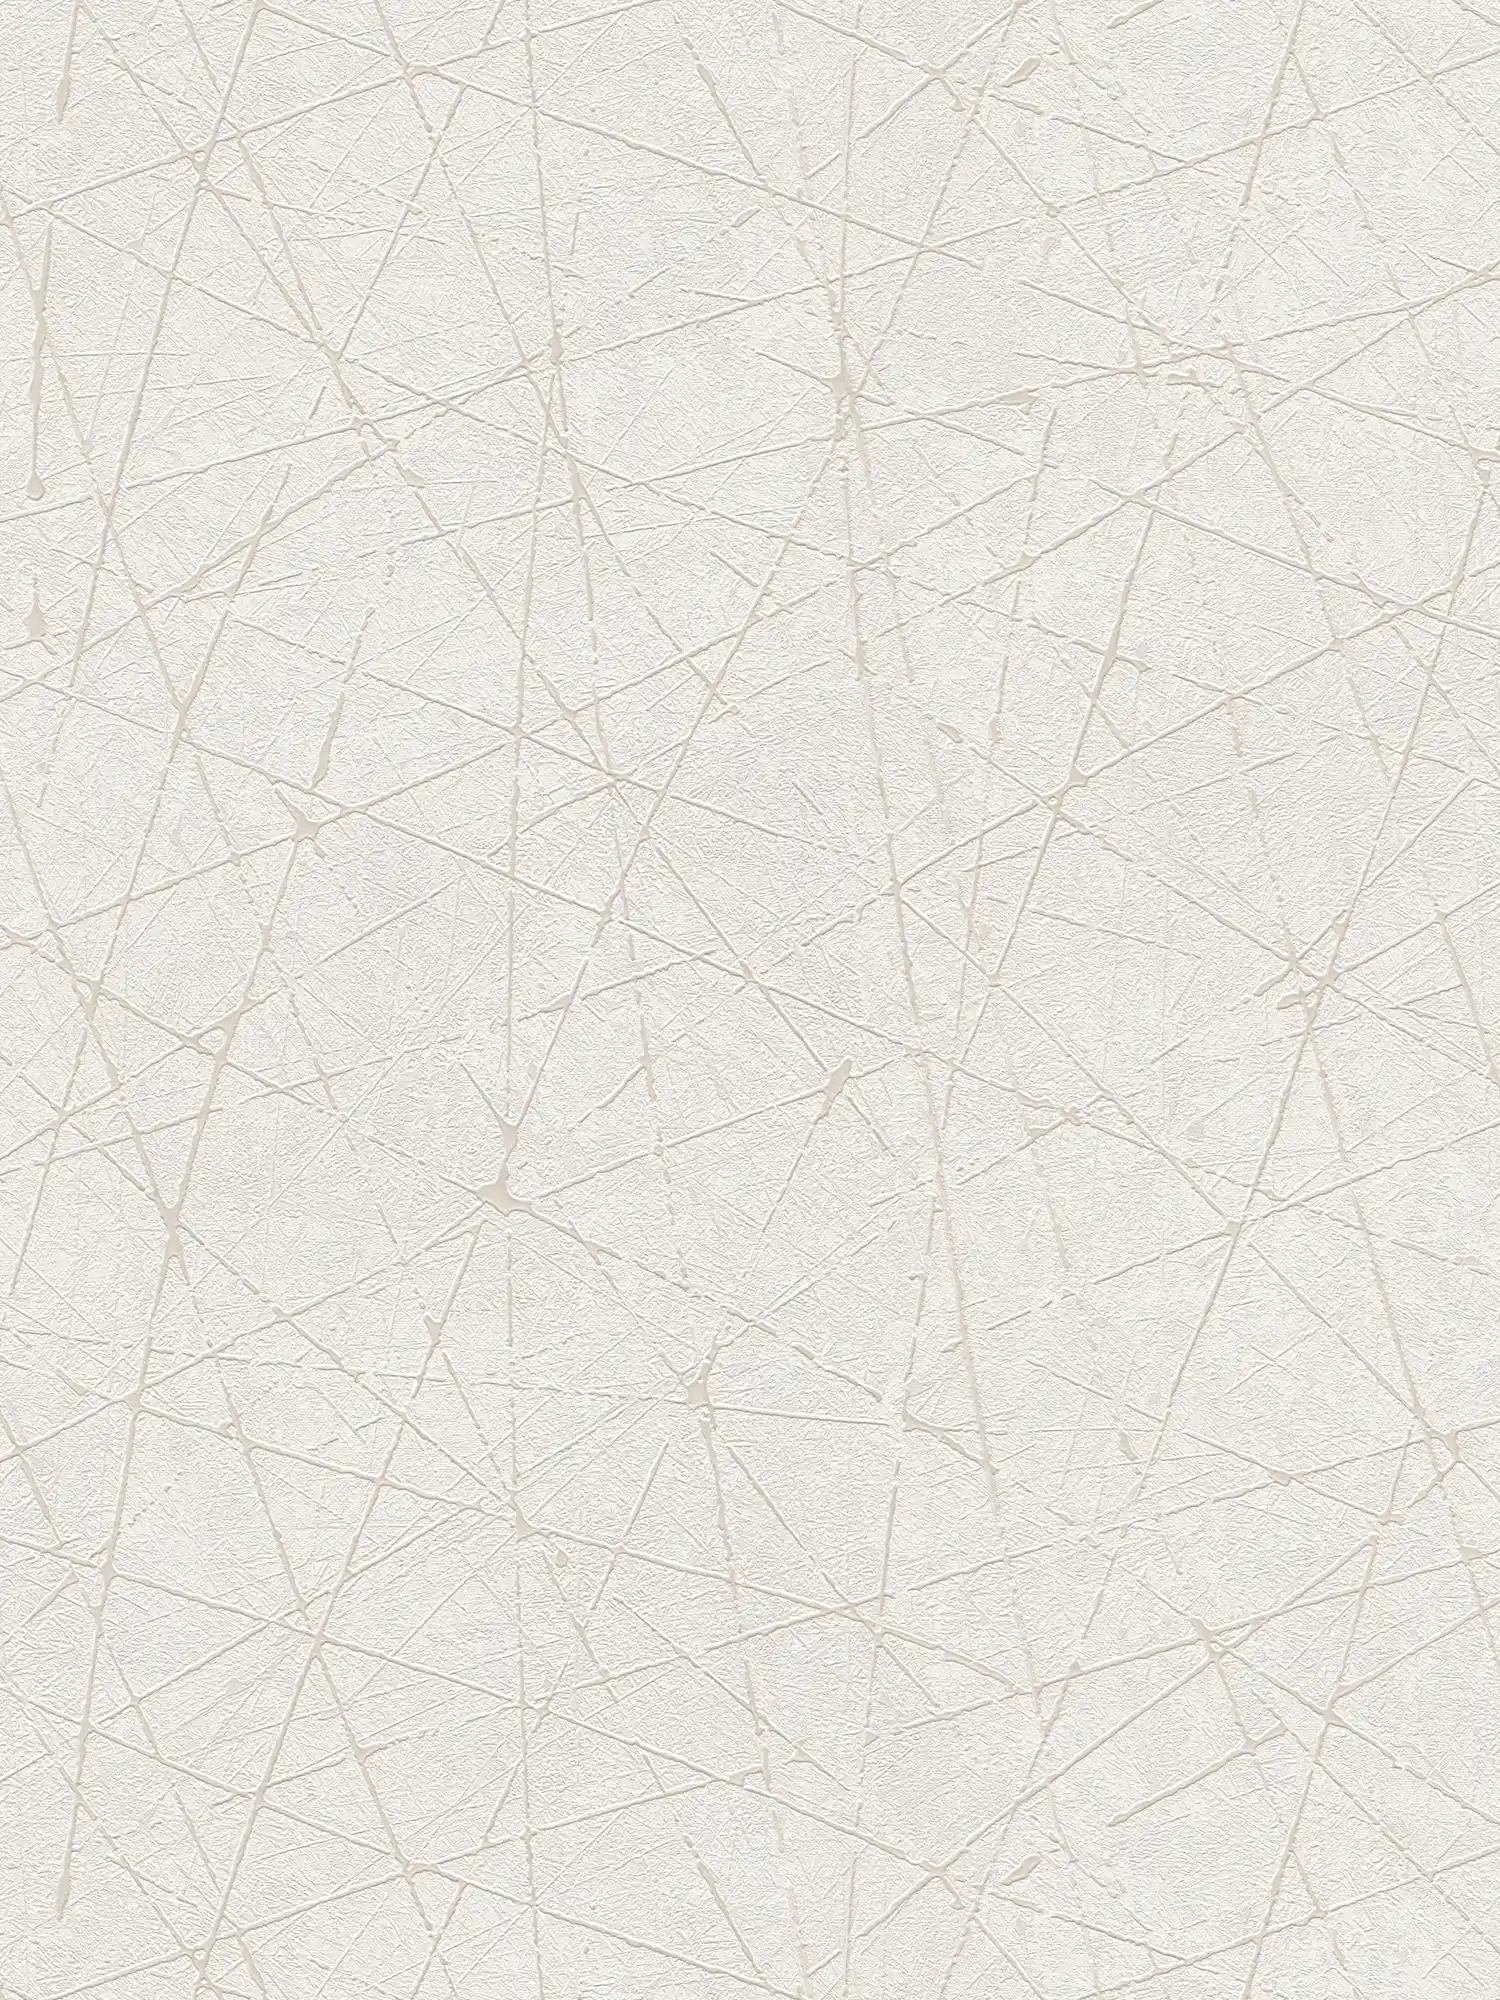         Papier peint intissé avec motif de lignes graphiques - blanc, crème, argenté
    